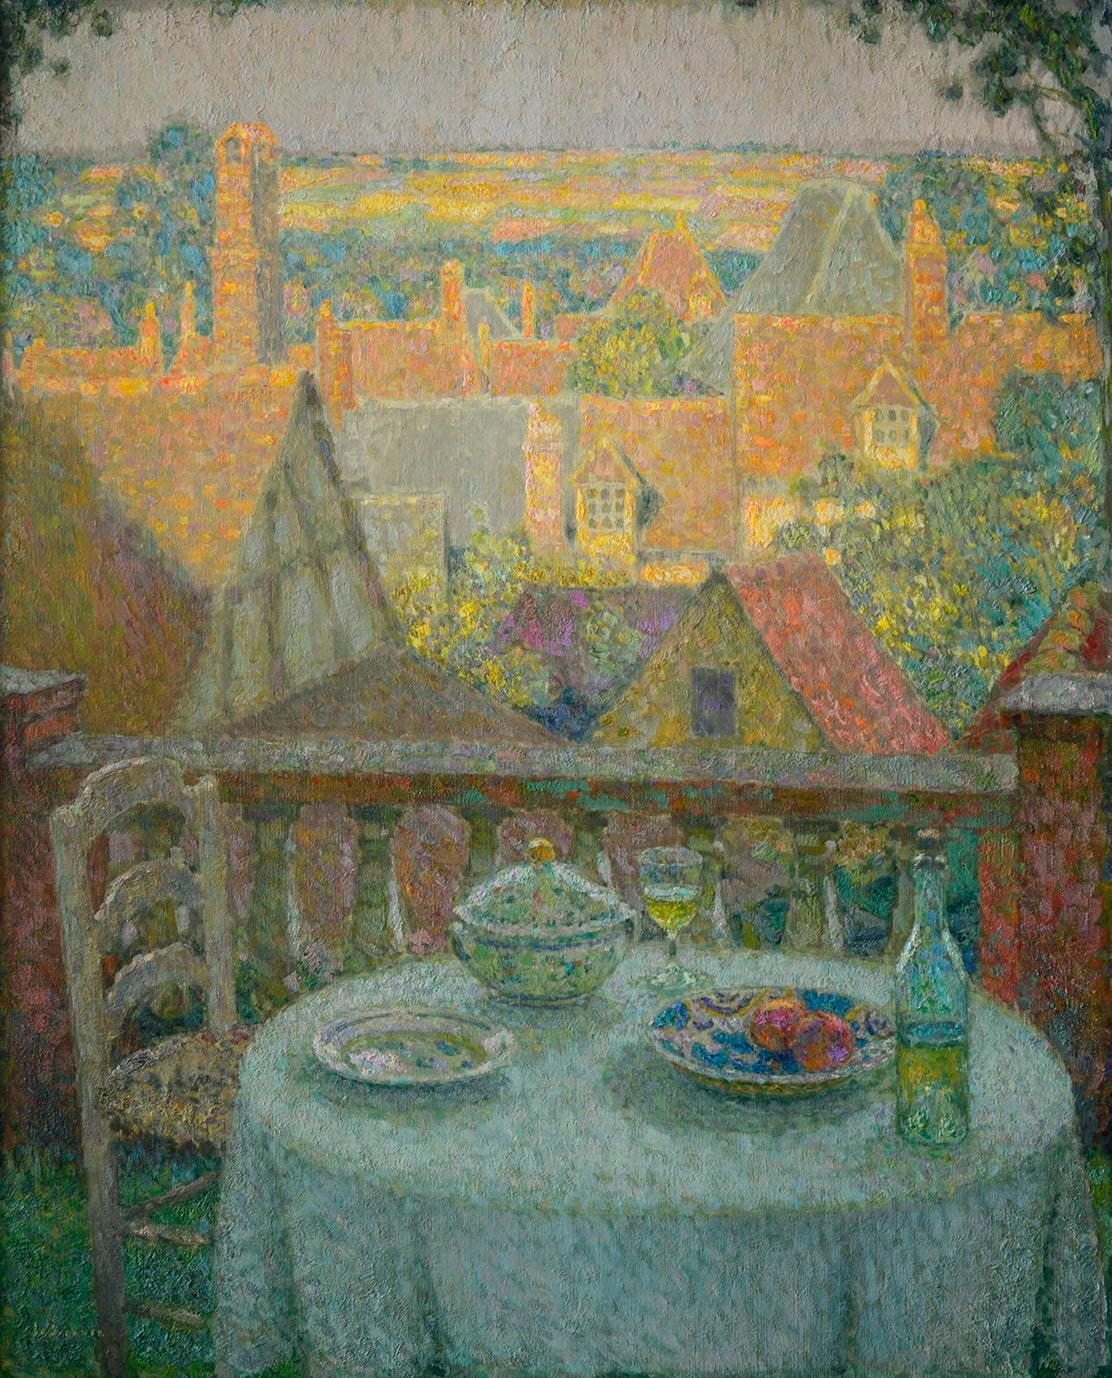 アンリ・ル・シダネル《ジェルブロワ、テラスの食卓》（1930年 油彩、カンヴァス 100×81cm フランス、個人蔵 ©Luc Paris）